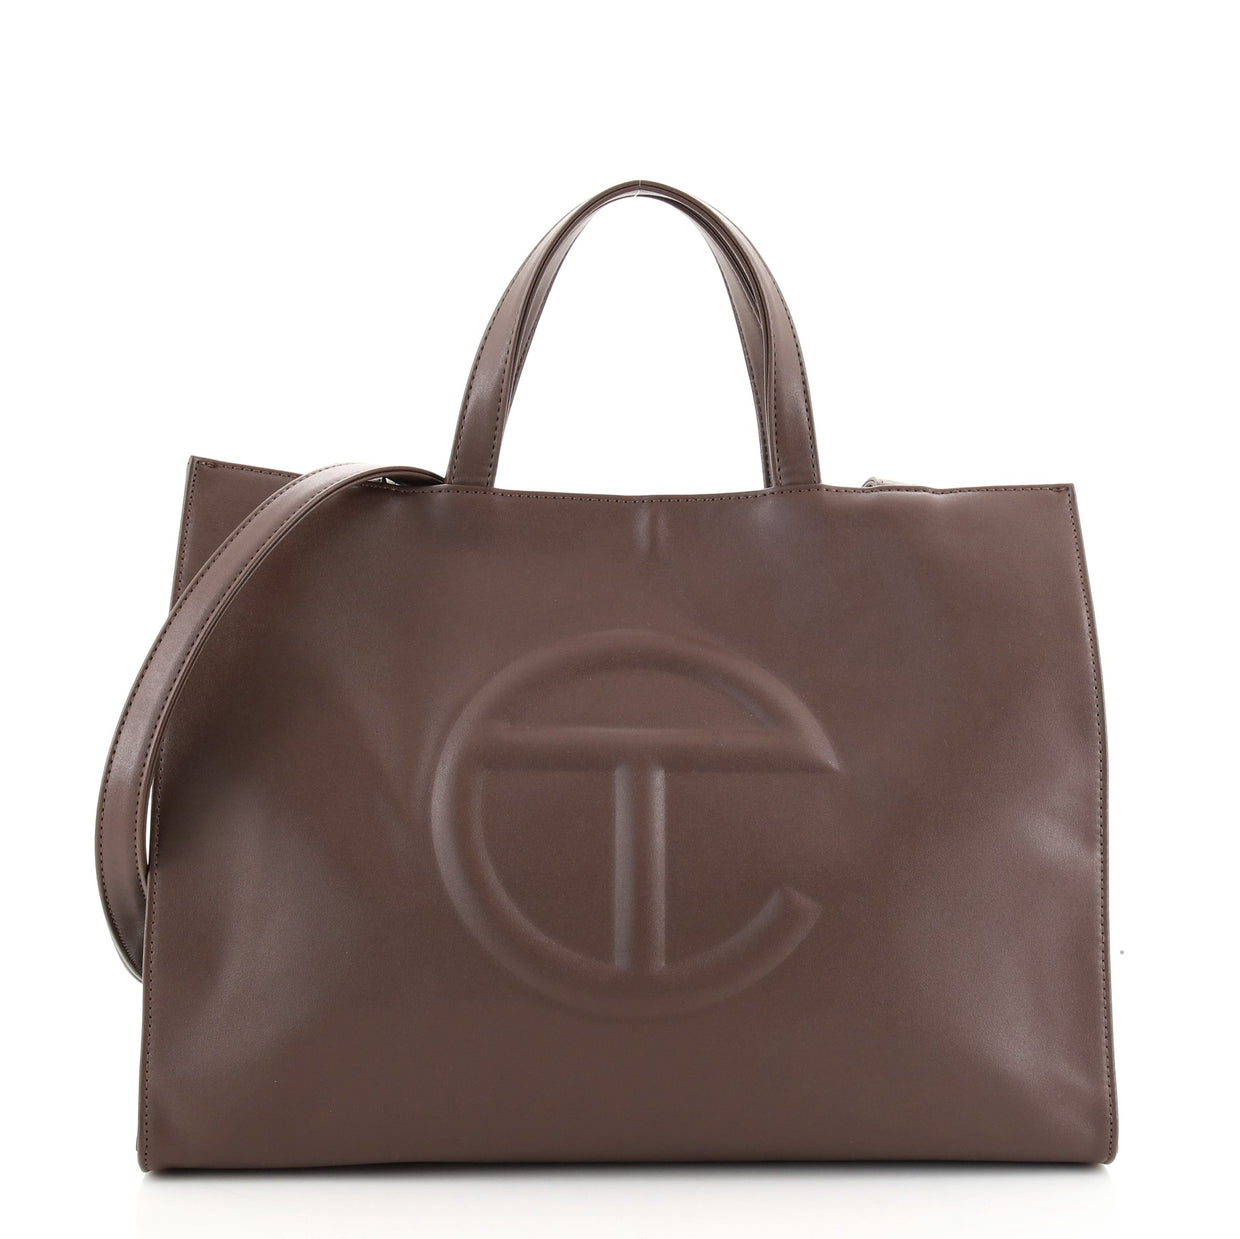 Telfar Shopping Tote Faux Leather Medium Brown 838061